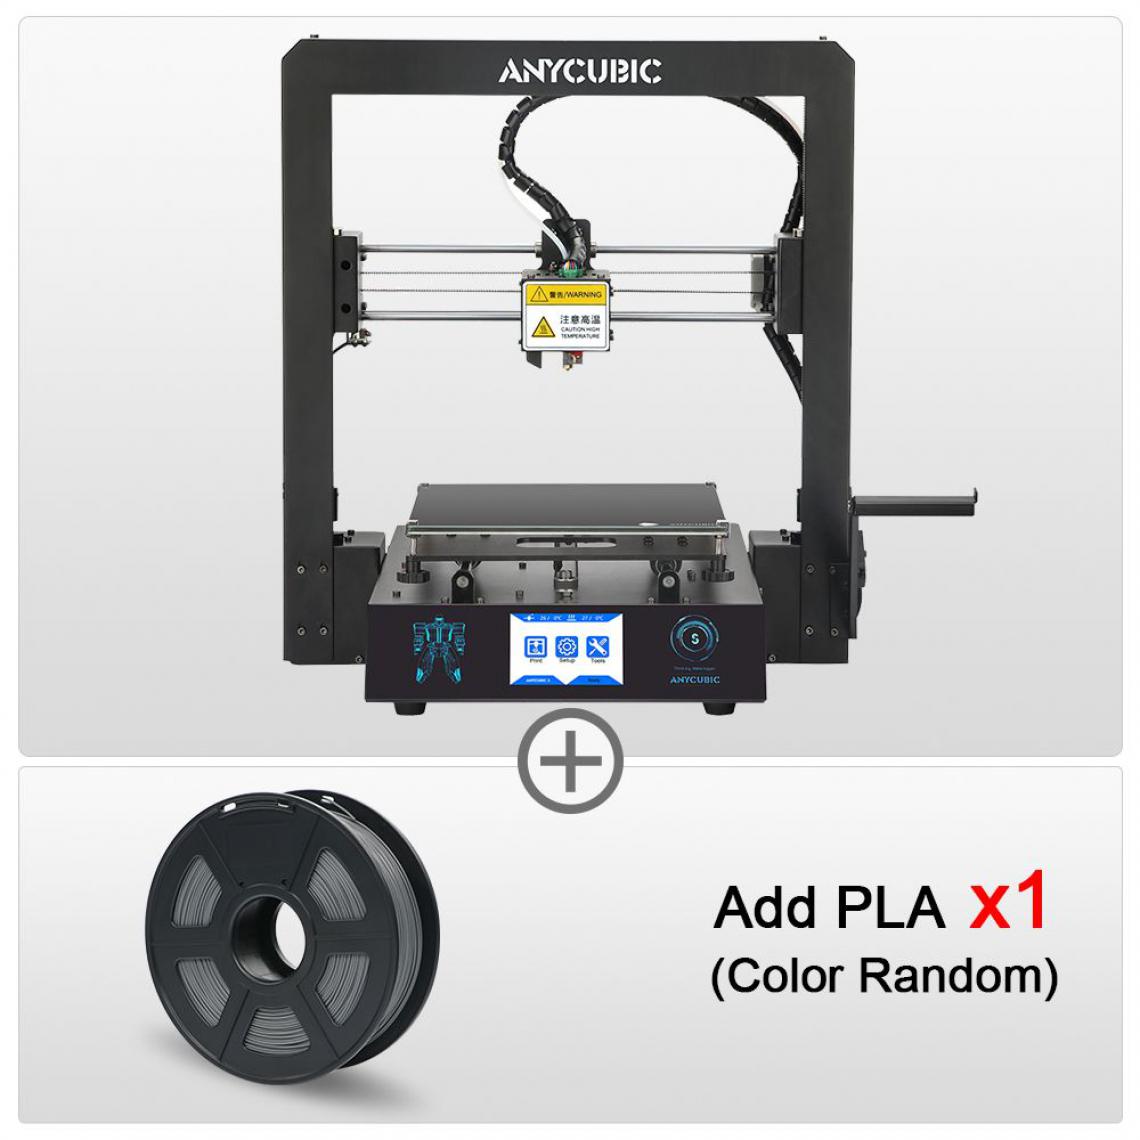 Generic - Imprimante 3D ANYCUBIC i3 Mega S  avec à 1 Tête d'Impression  PLA, ABS, TPU,PETG et Cadre Entièrement Métallique et 1 Filament 21 * 21 * 20.5 cm - Noir  - Imprimante 3D